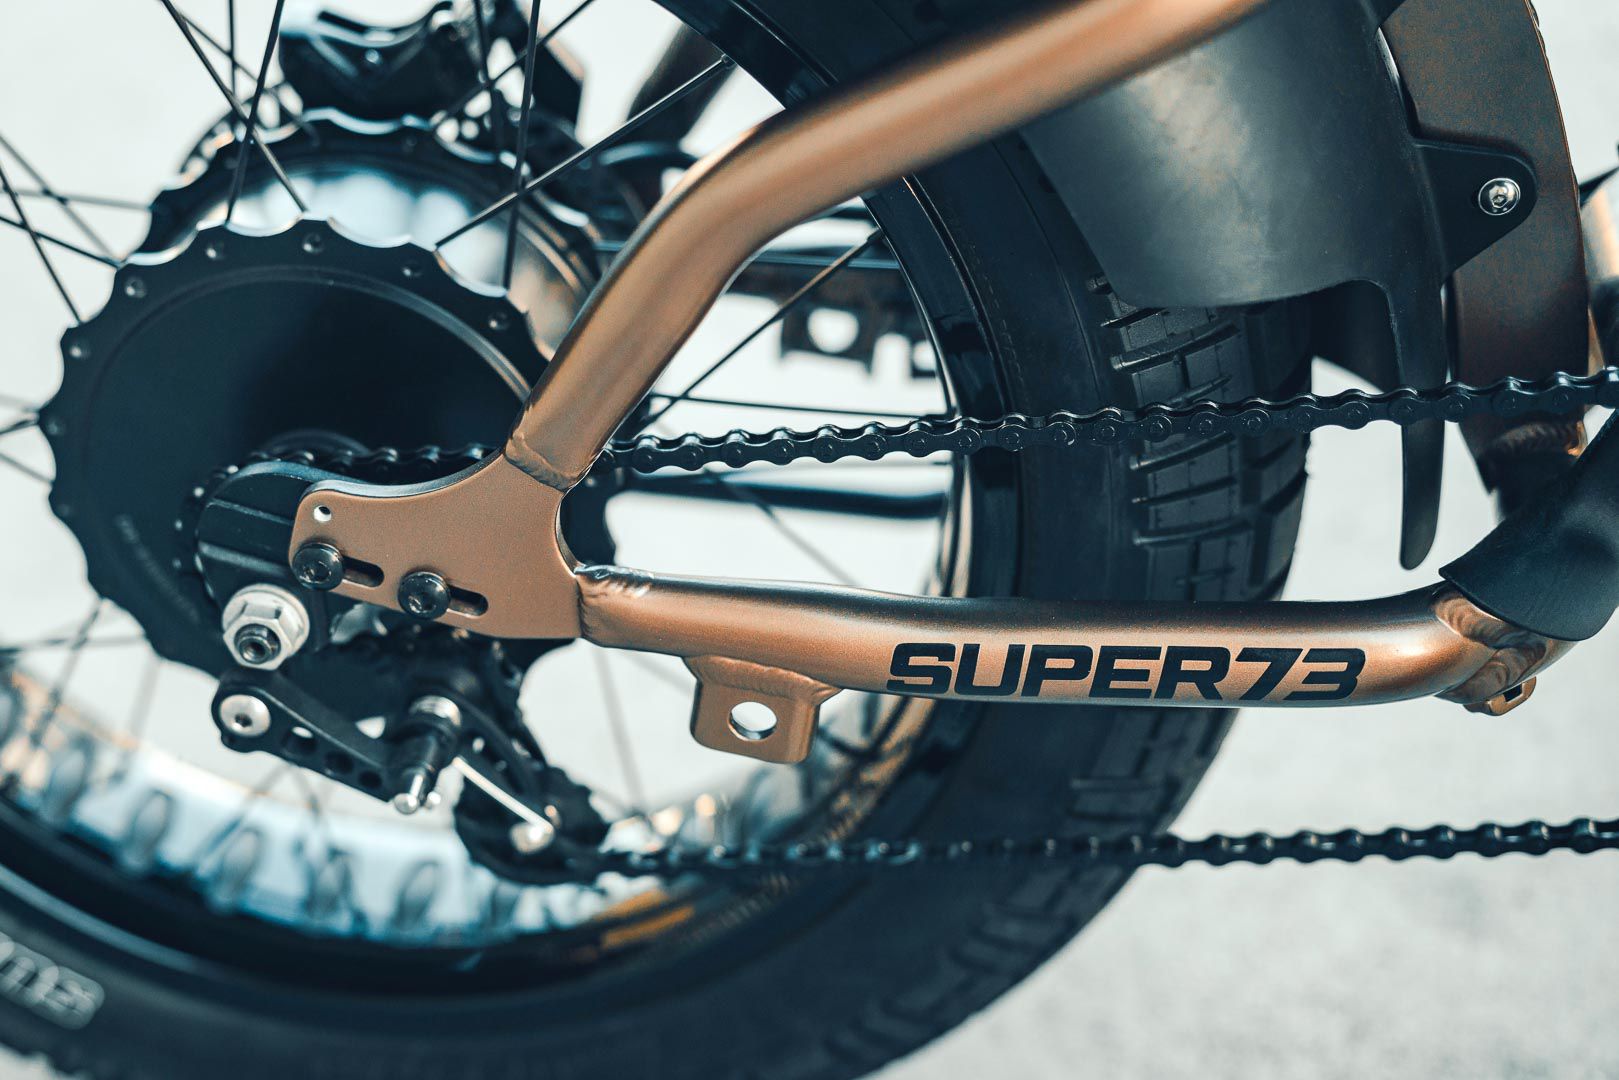 nh207 - Super73 Flat Track RX: Chiếc xe đạp lai đầy táo bạo